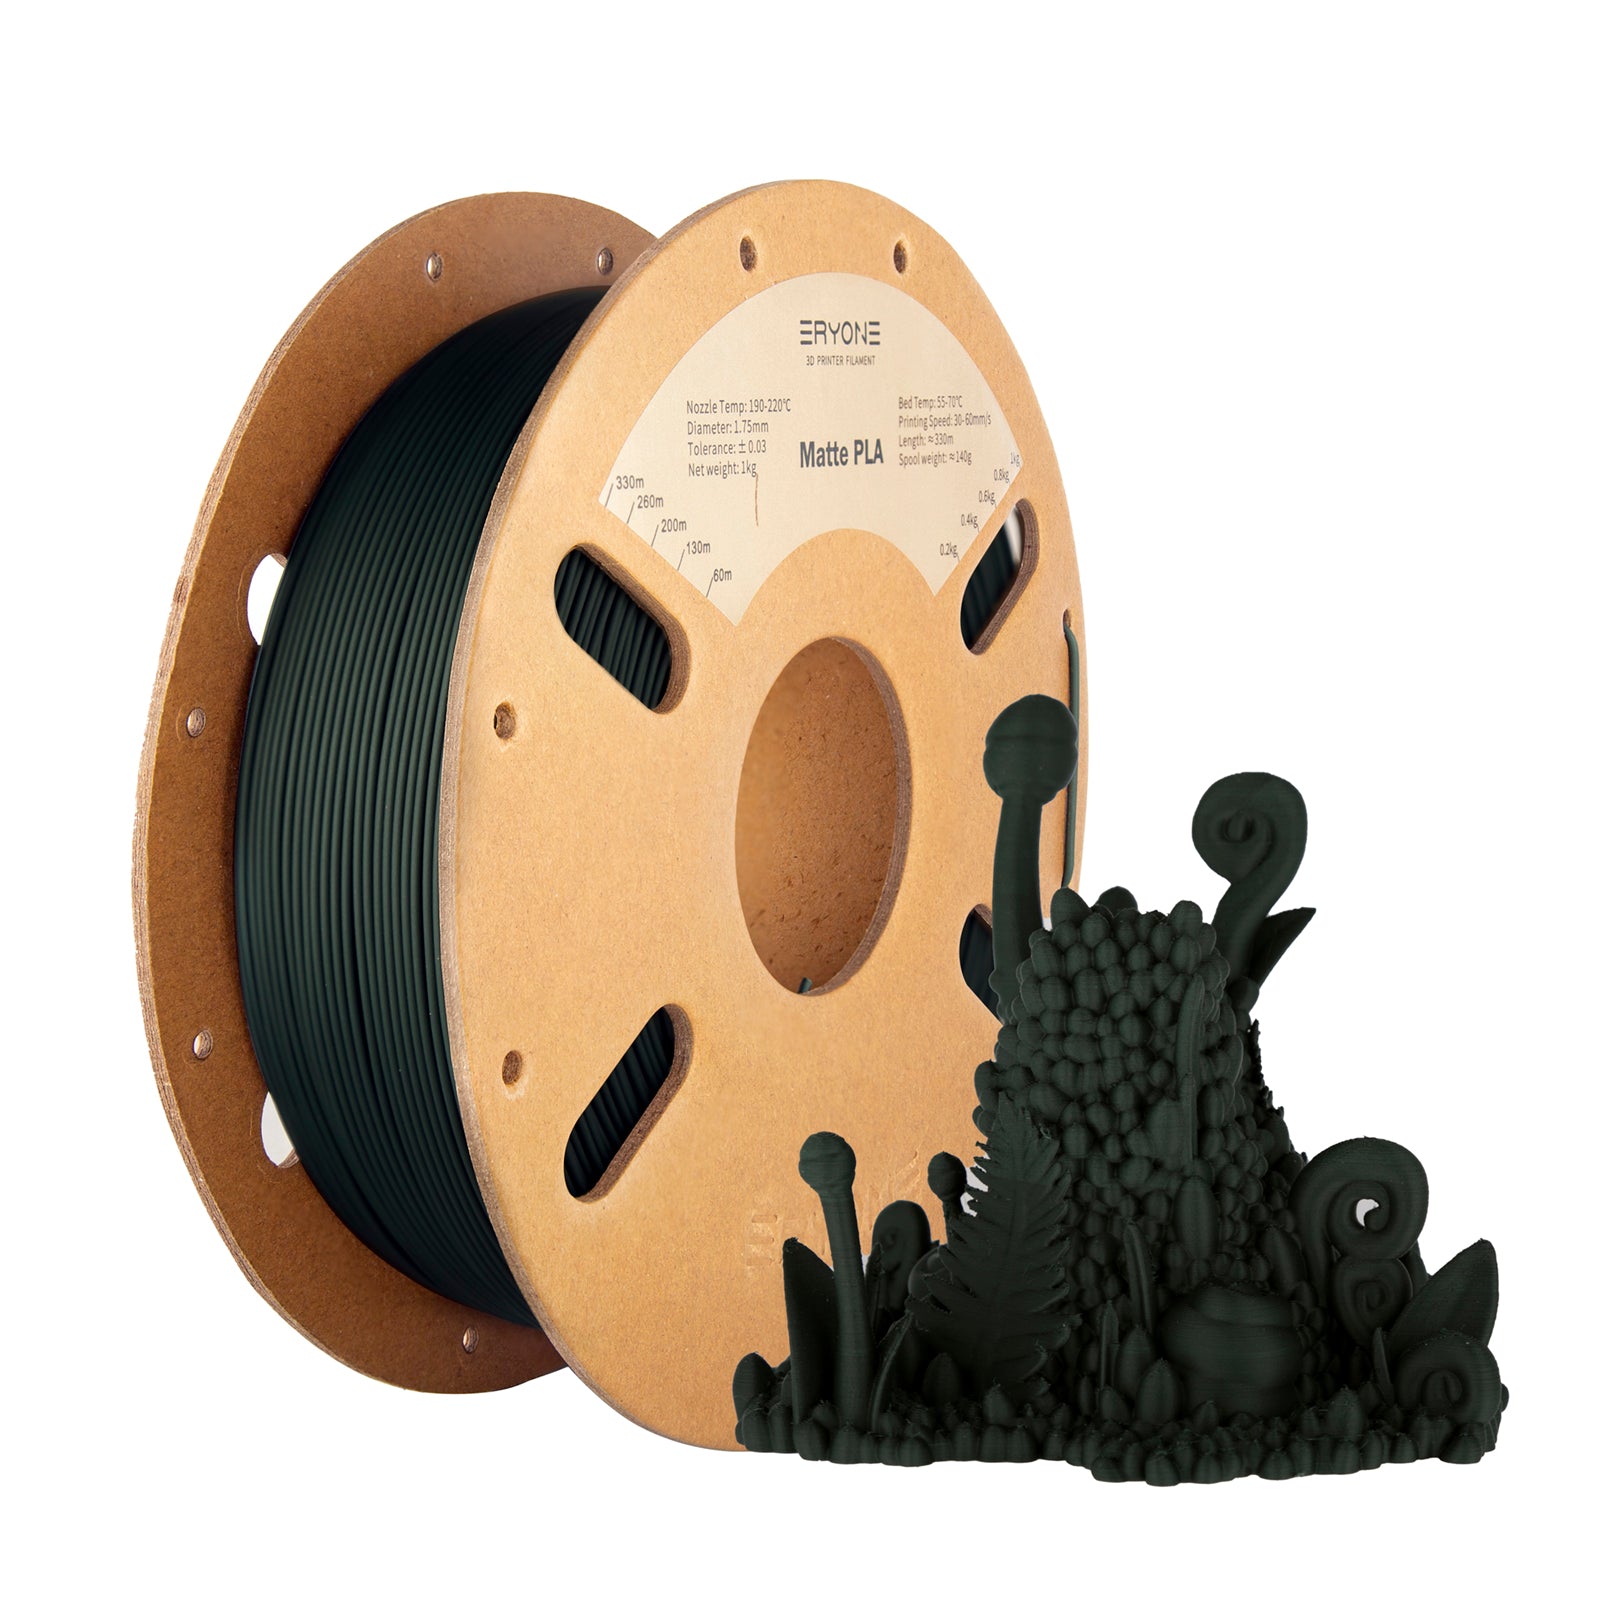 Hyper 1.75mm PLA 3D Printing Filament 1kg